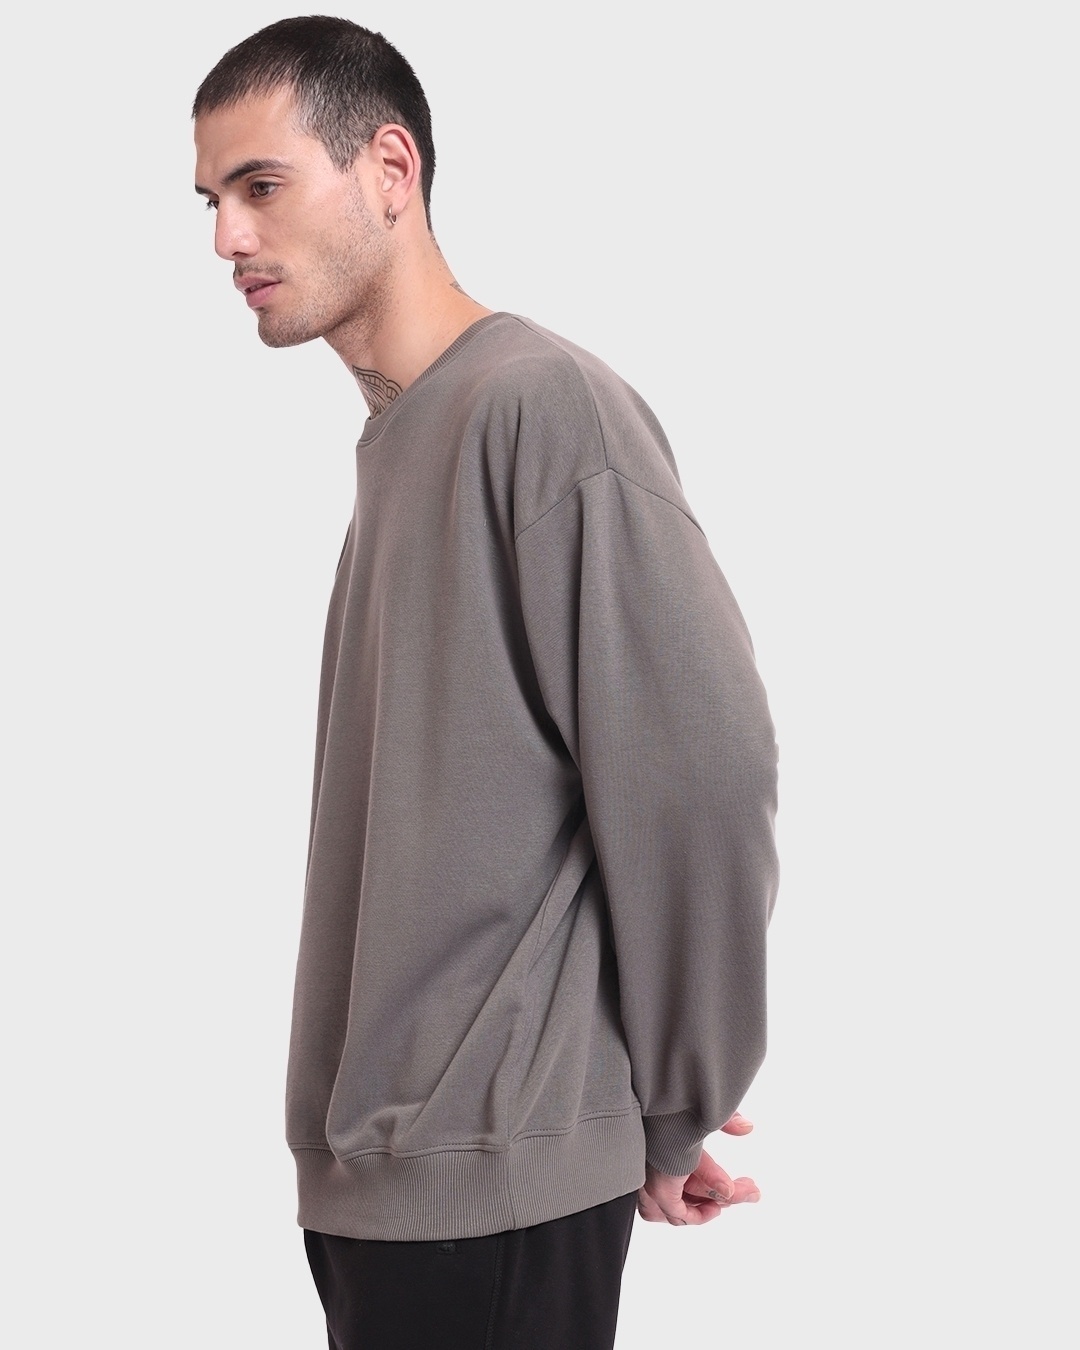 Buy Men's Grey Oversized Sweatshirt for Men Online at Bewakoof